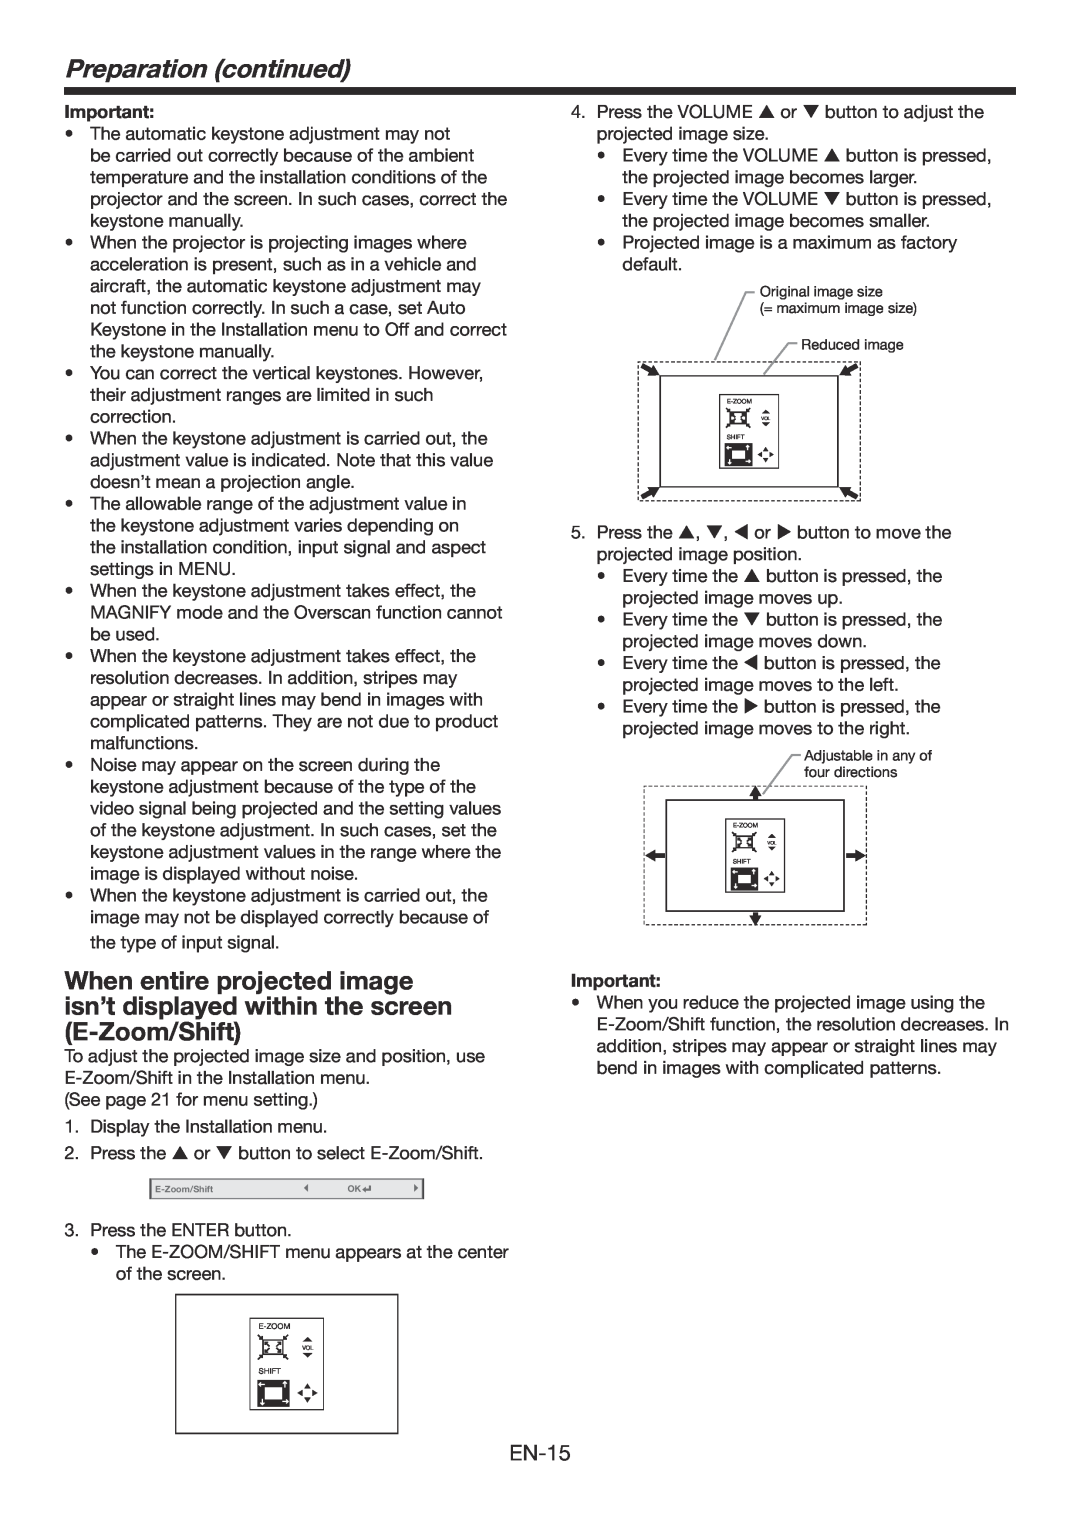 Mitsubishi Electronics WD390U-EST user manual Preparation continued, EN-15 